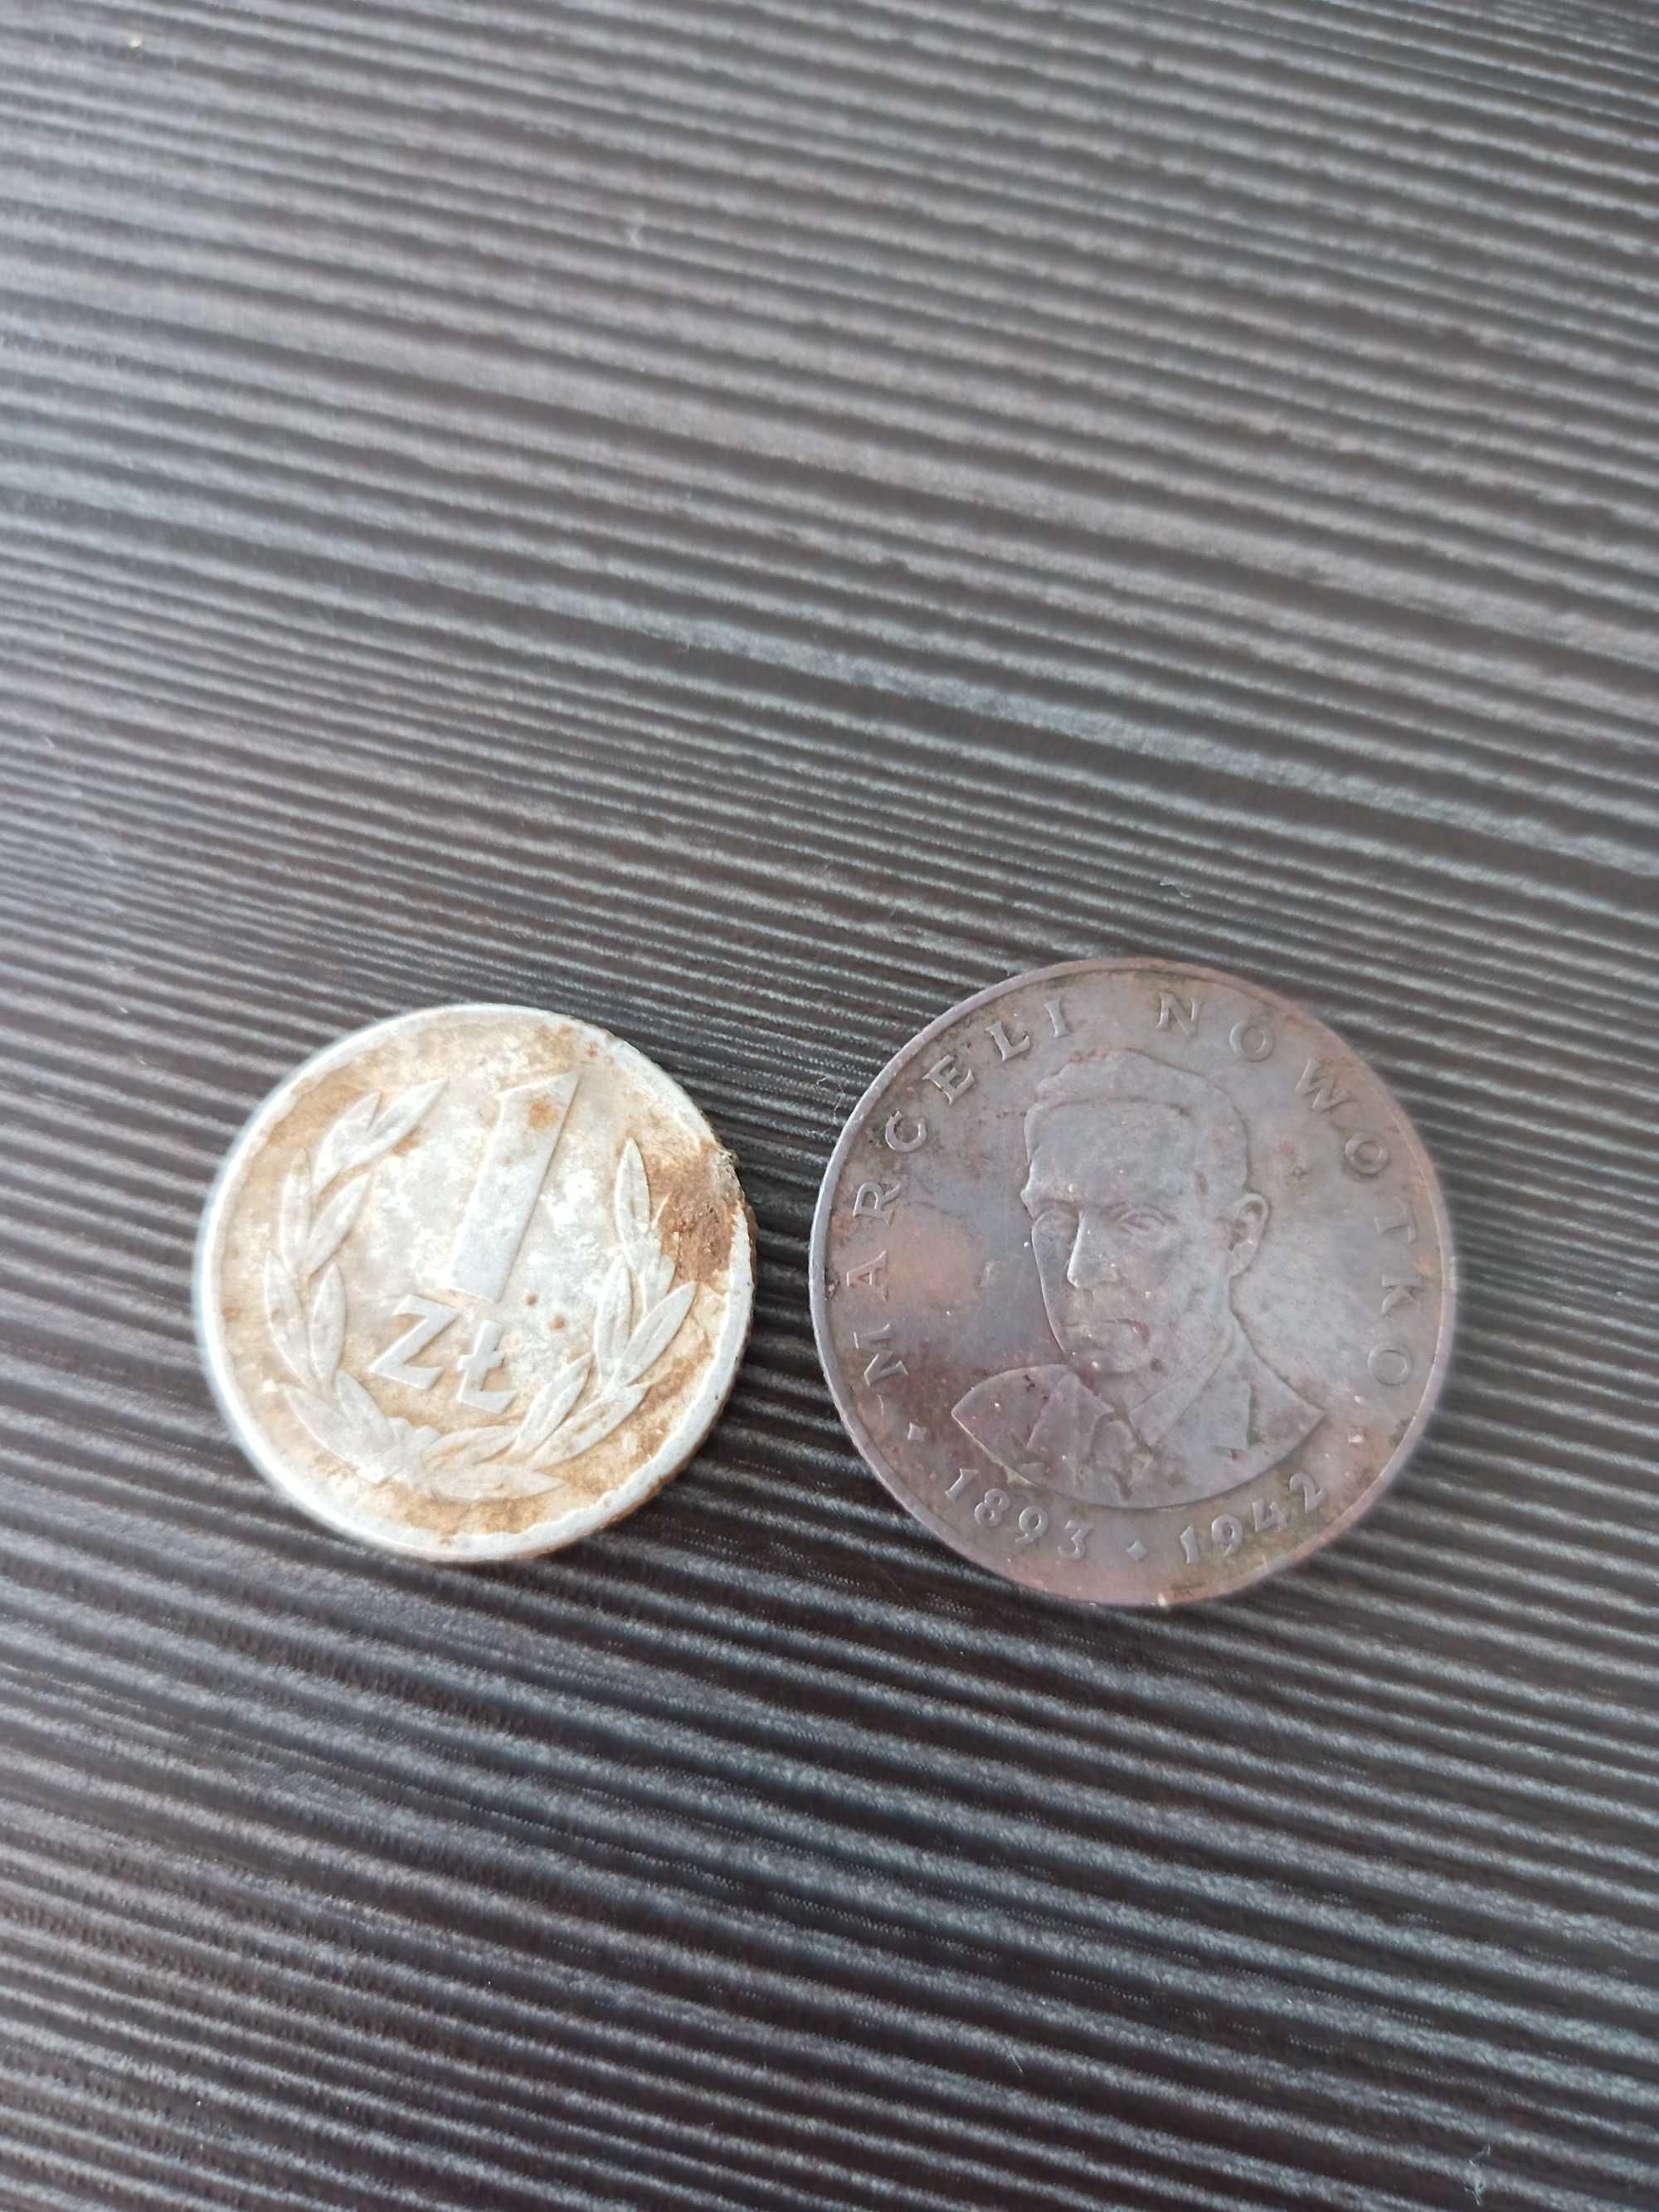 dwie monety
1 złoty 1966 rok
20 złotych 1977 rok